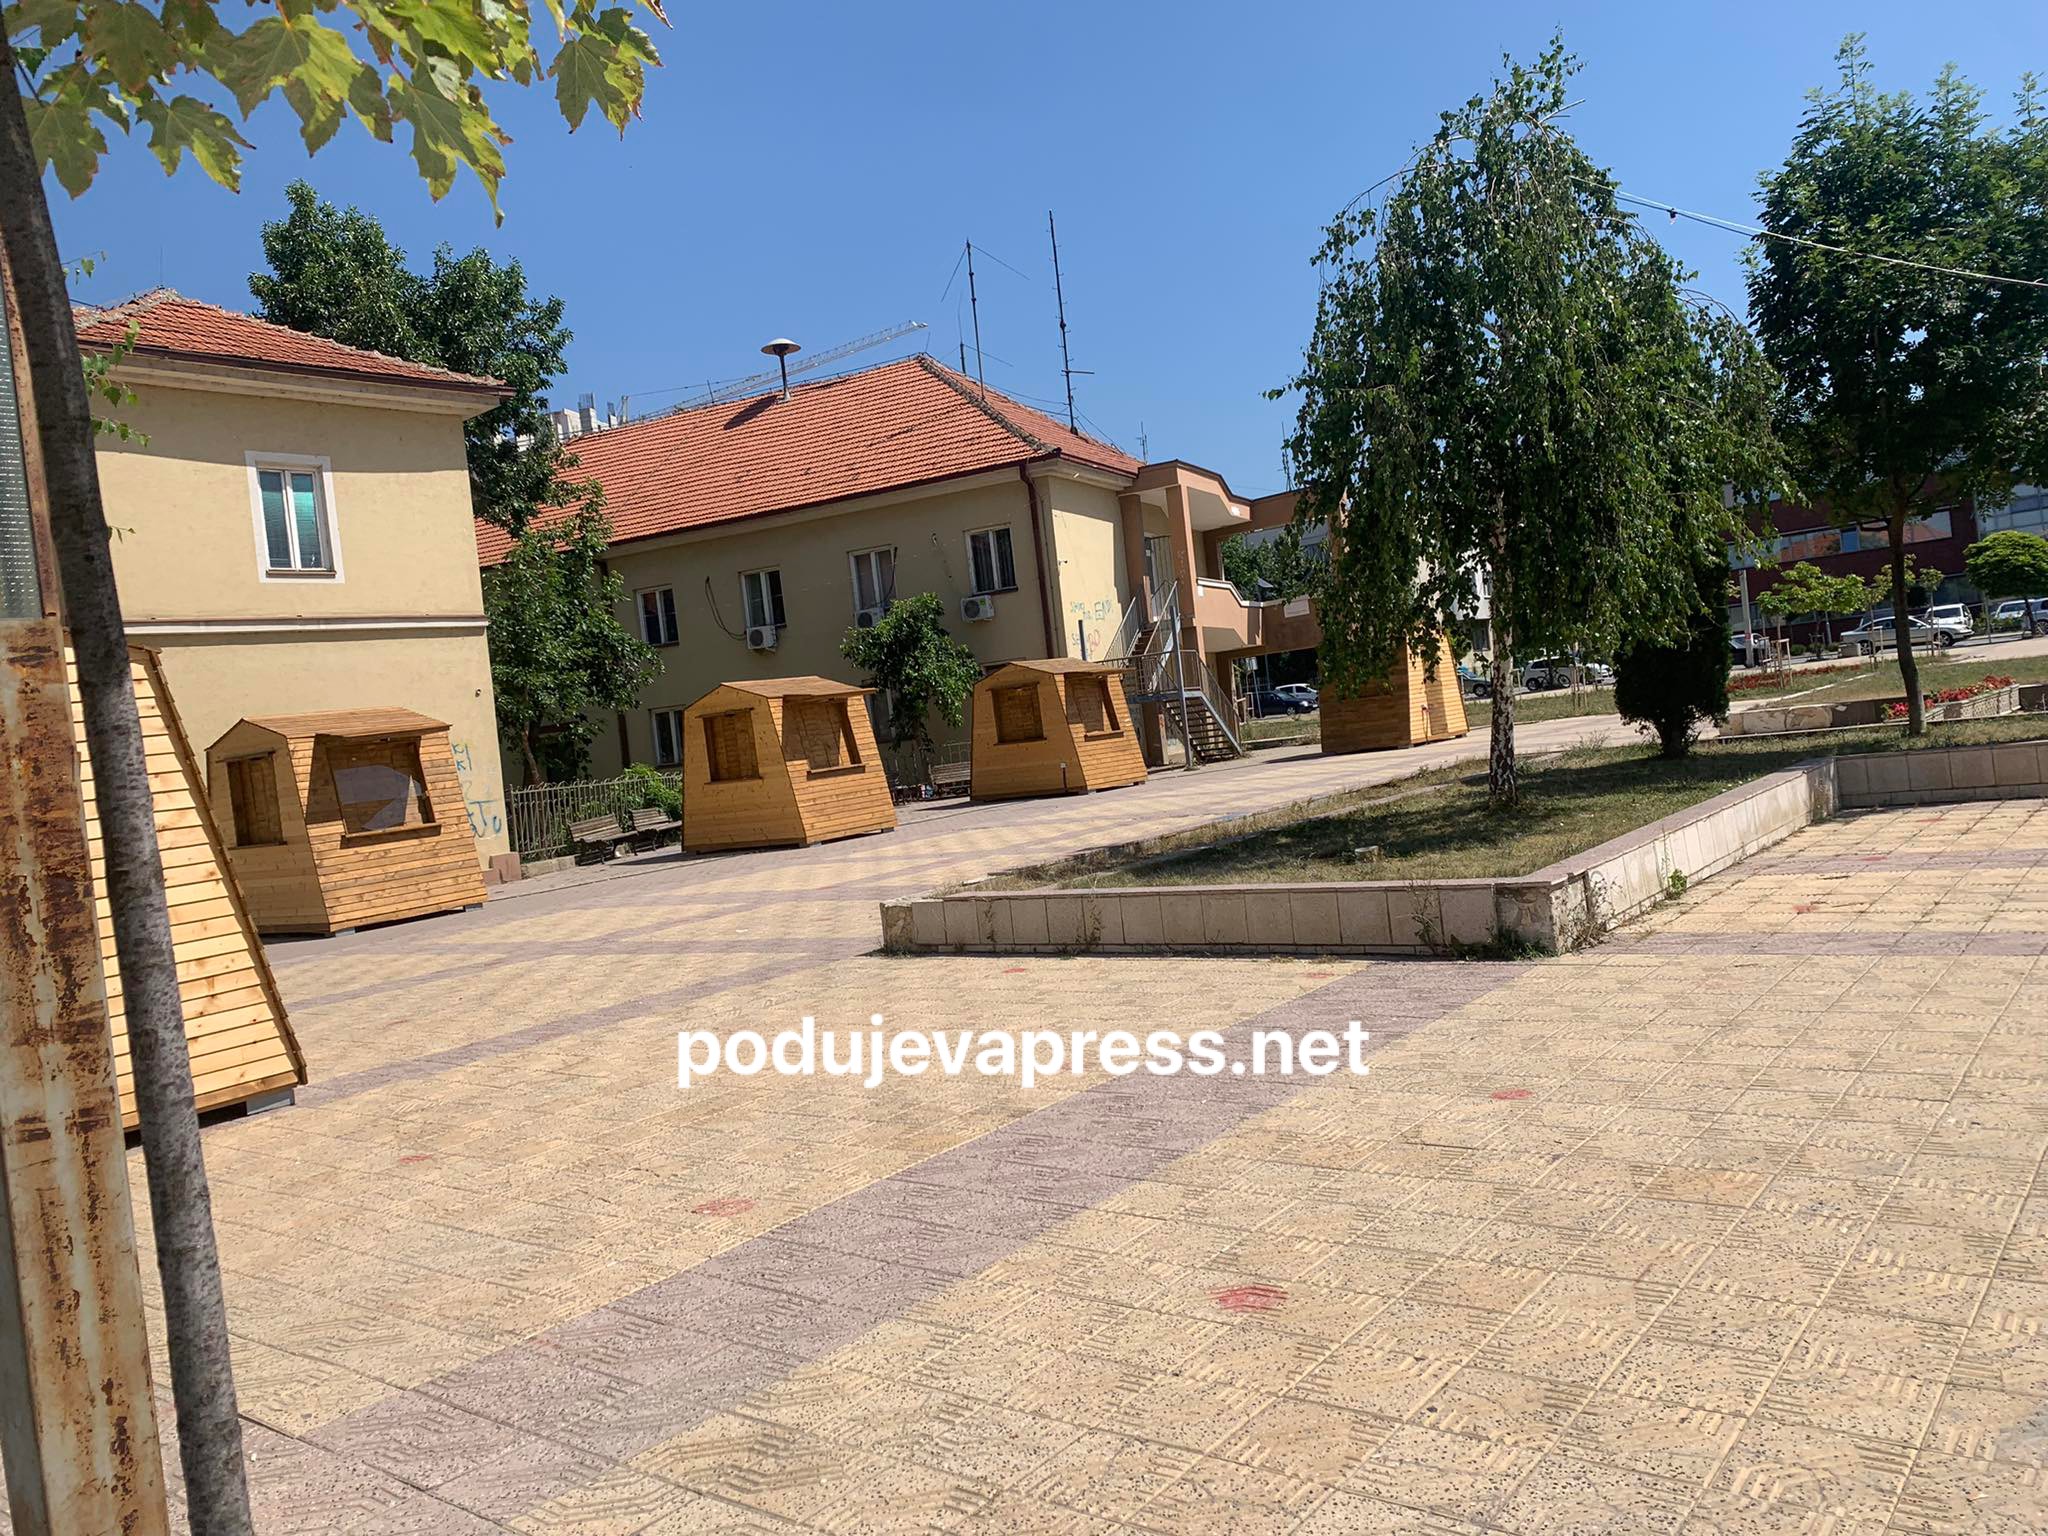  Komunës së Podujevës i dështon idea për shtëpizat prej druri, nuk ka interesim